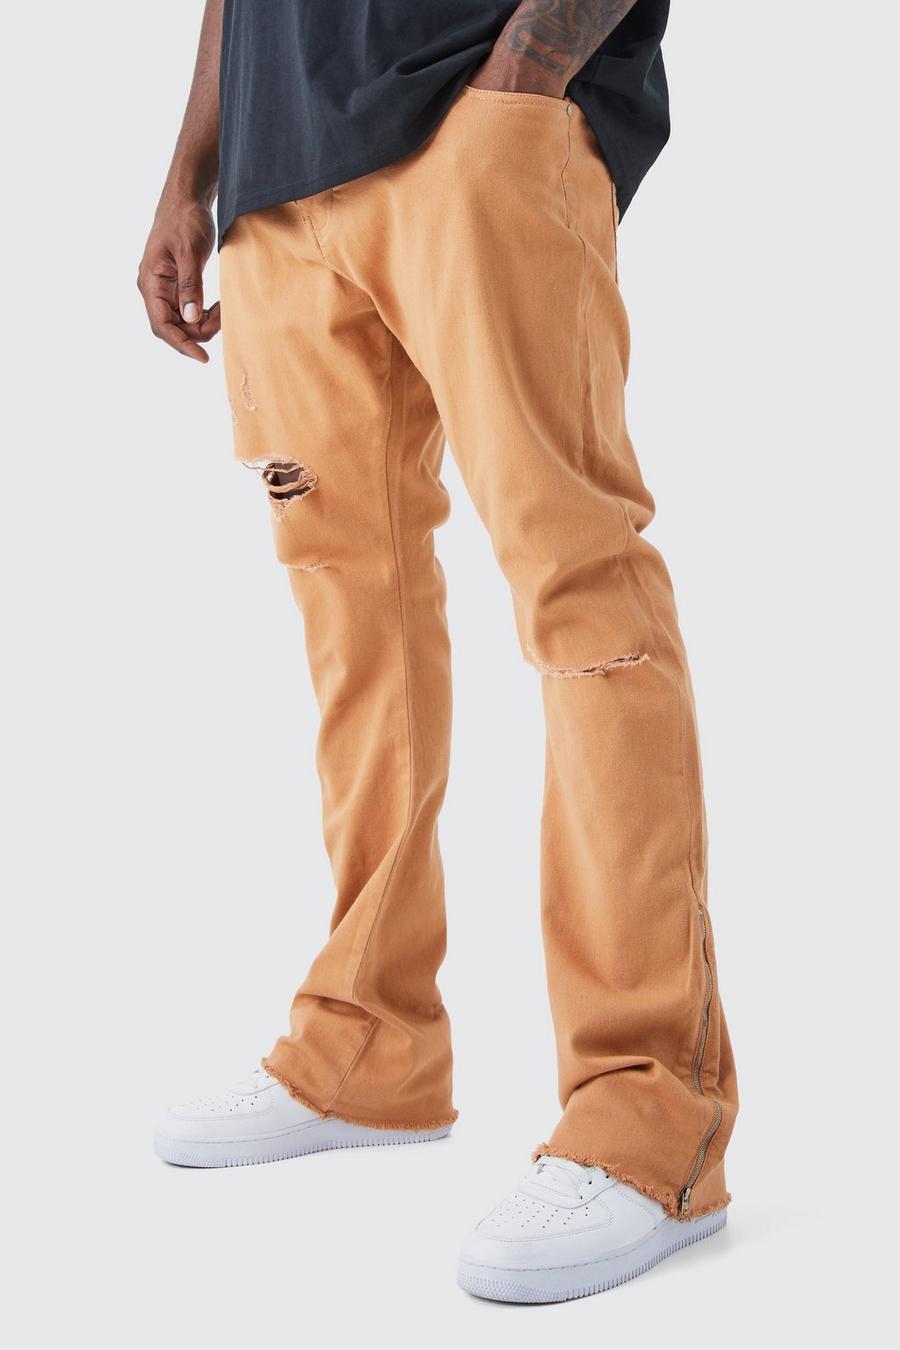 Pantalón Plus con cintura fija, desgarros cosidos, cremallera y refuerzos, Orange image number 1